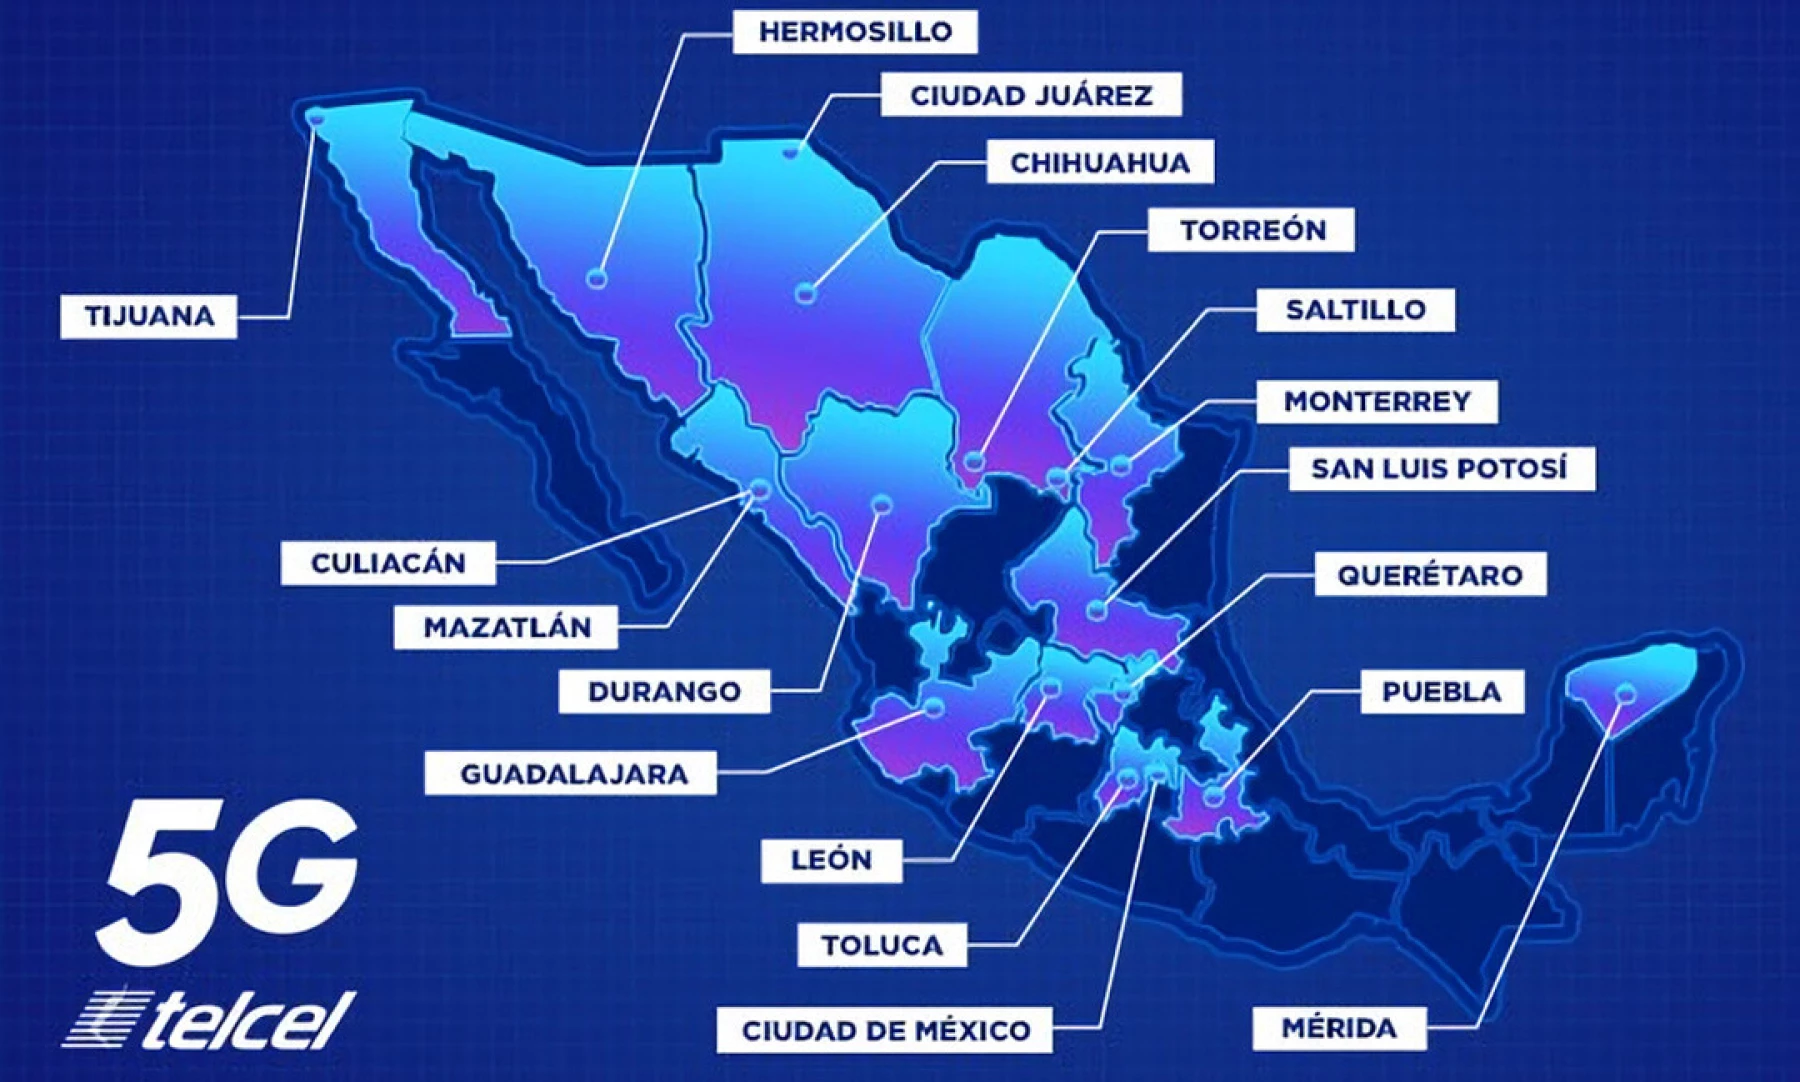 Lanza Telcel su red comercial 5G en 18 ciudades